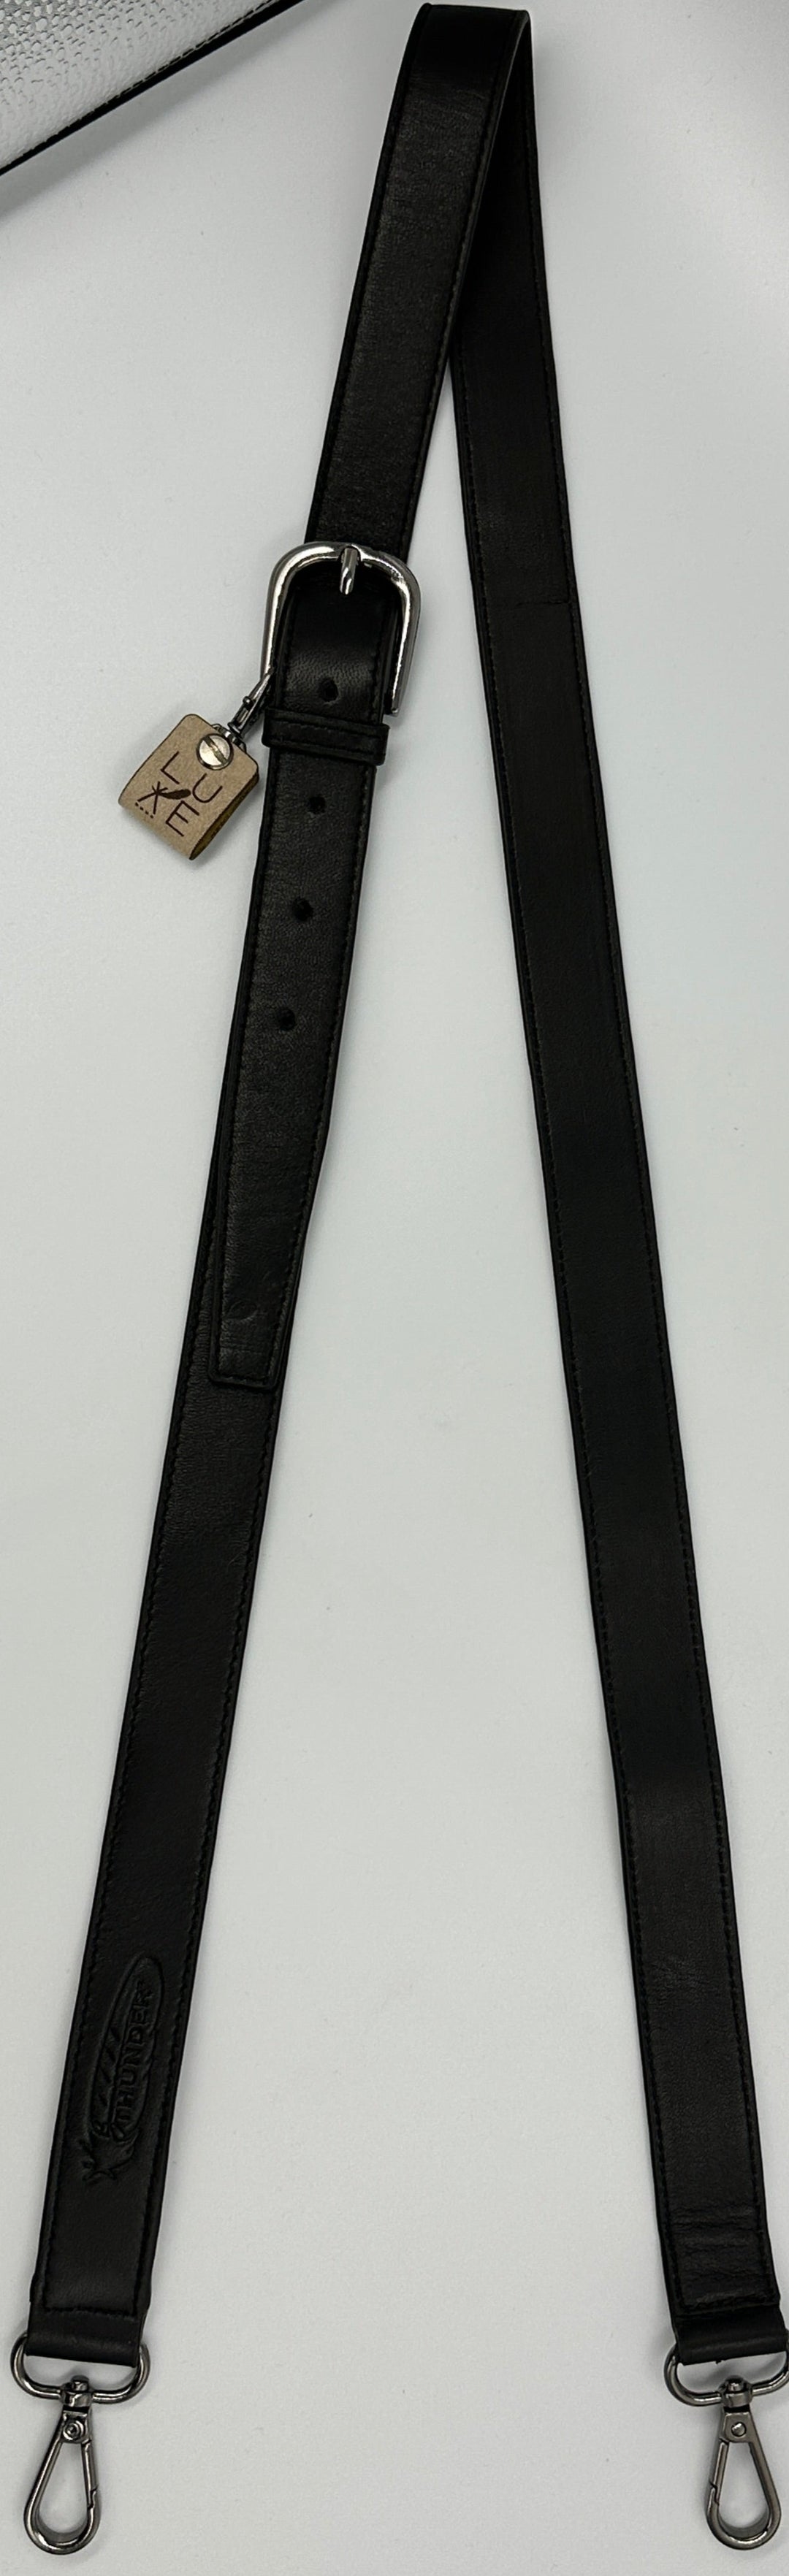 The Lozen- Adjustable Shoulder Strap